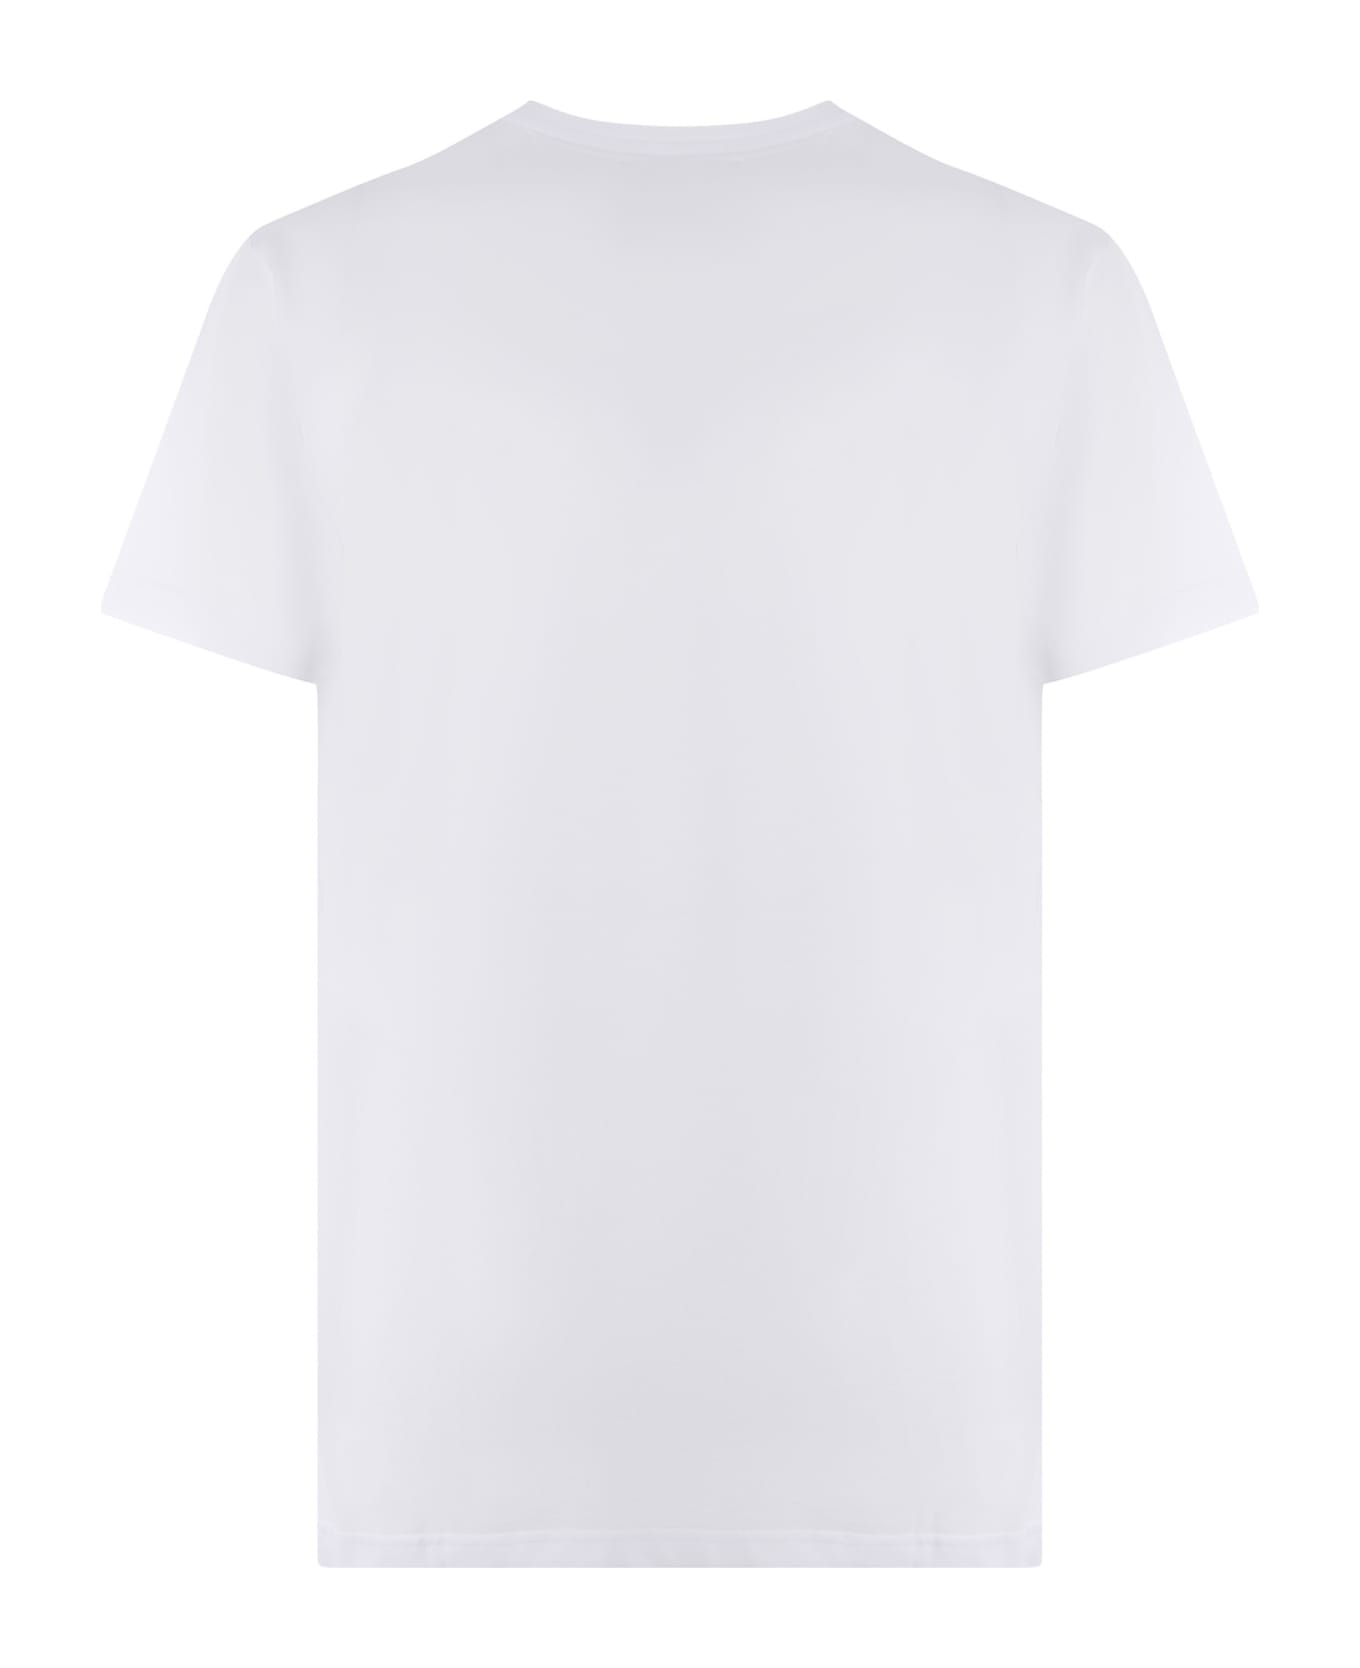 Giuseppe Zanotti T-shirt Giuseppe Zanotti Made Of Cotton - Bianco シャツ